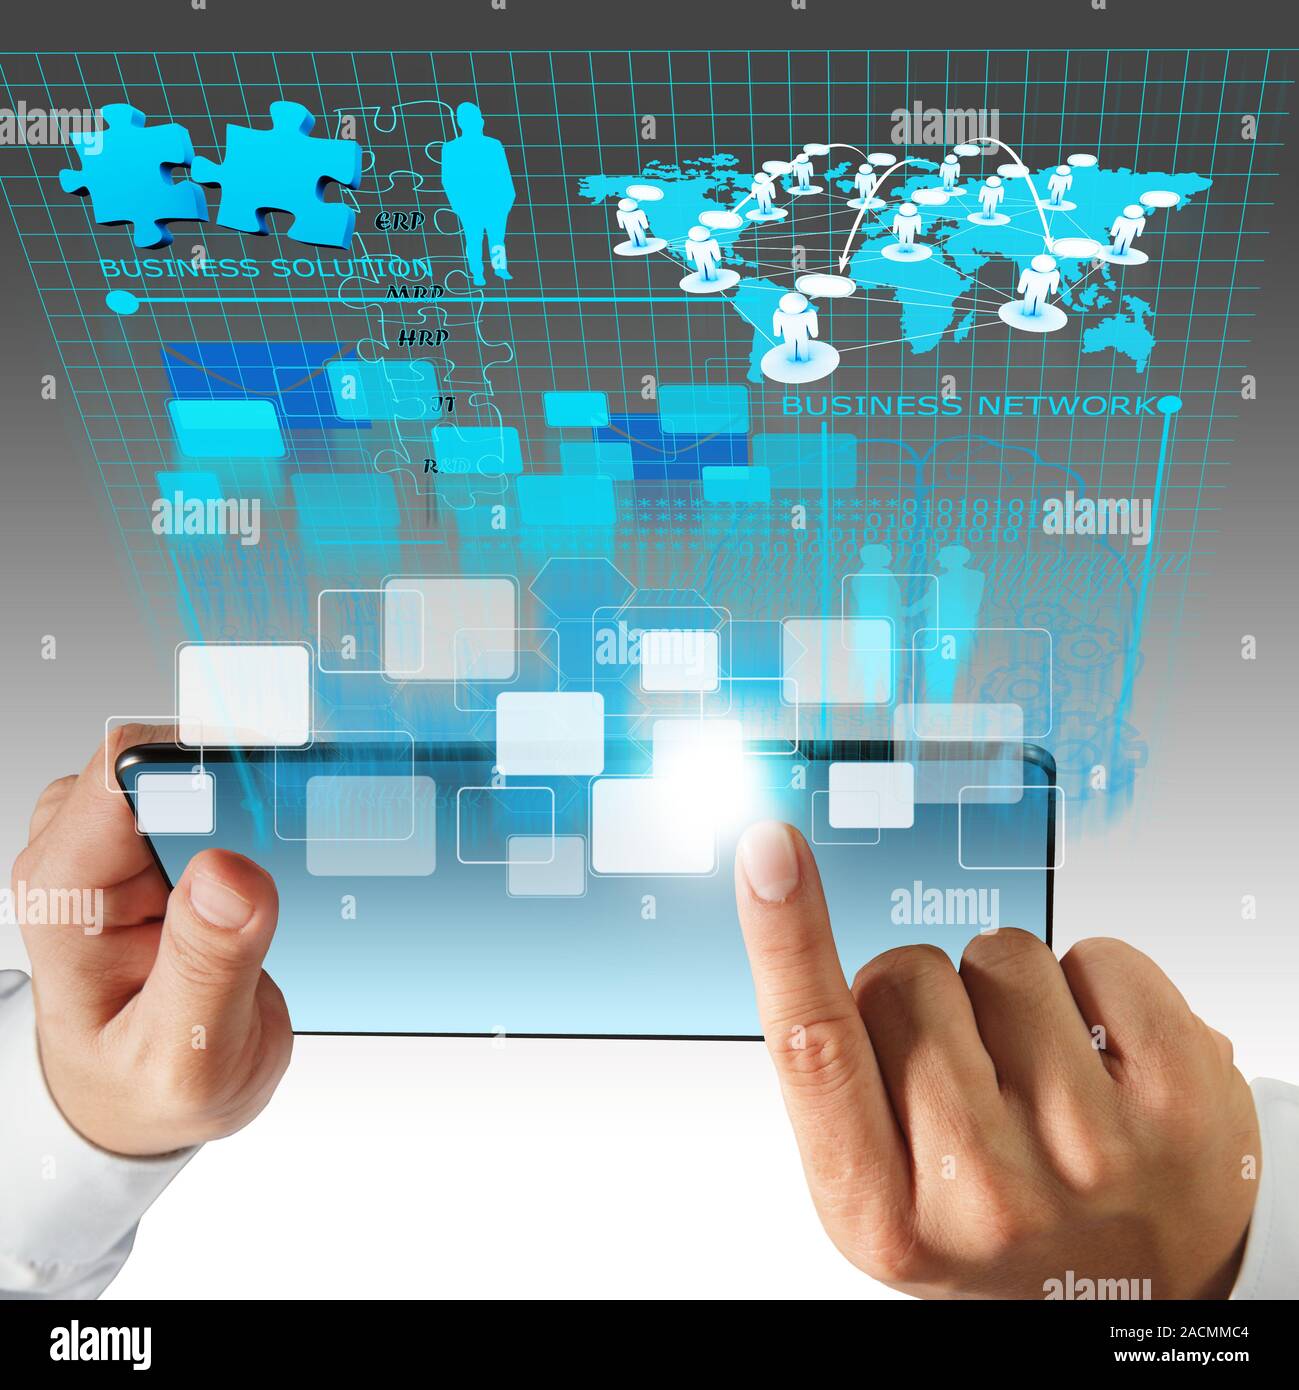 Virtuelle Business Netzwerk Prozessdiagramm Stockfoto